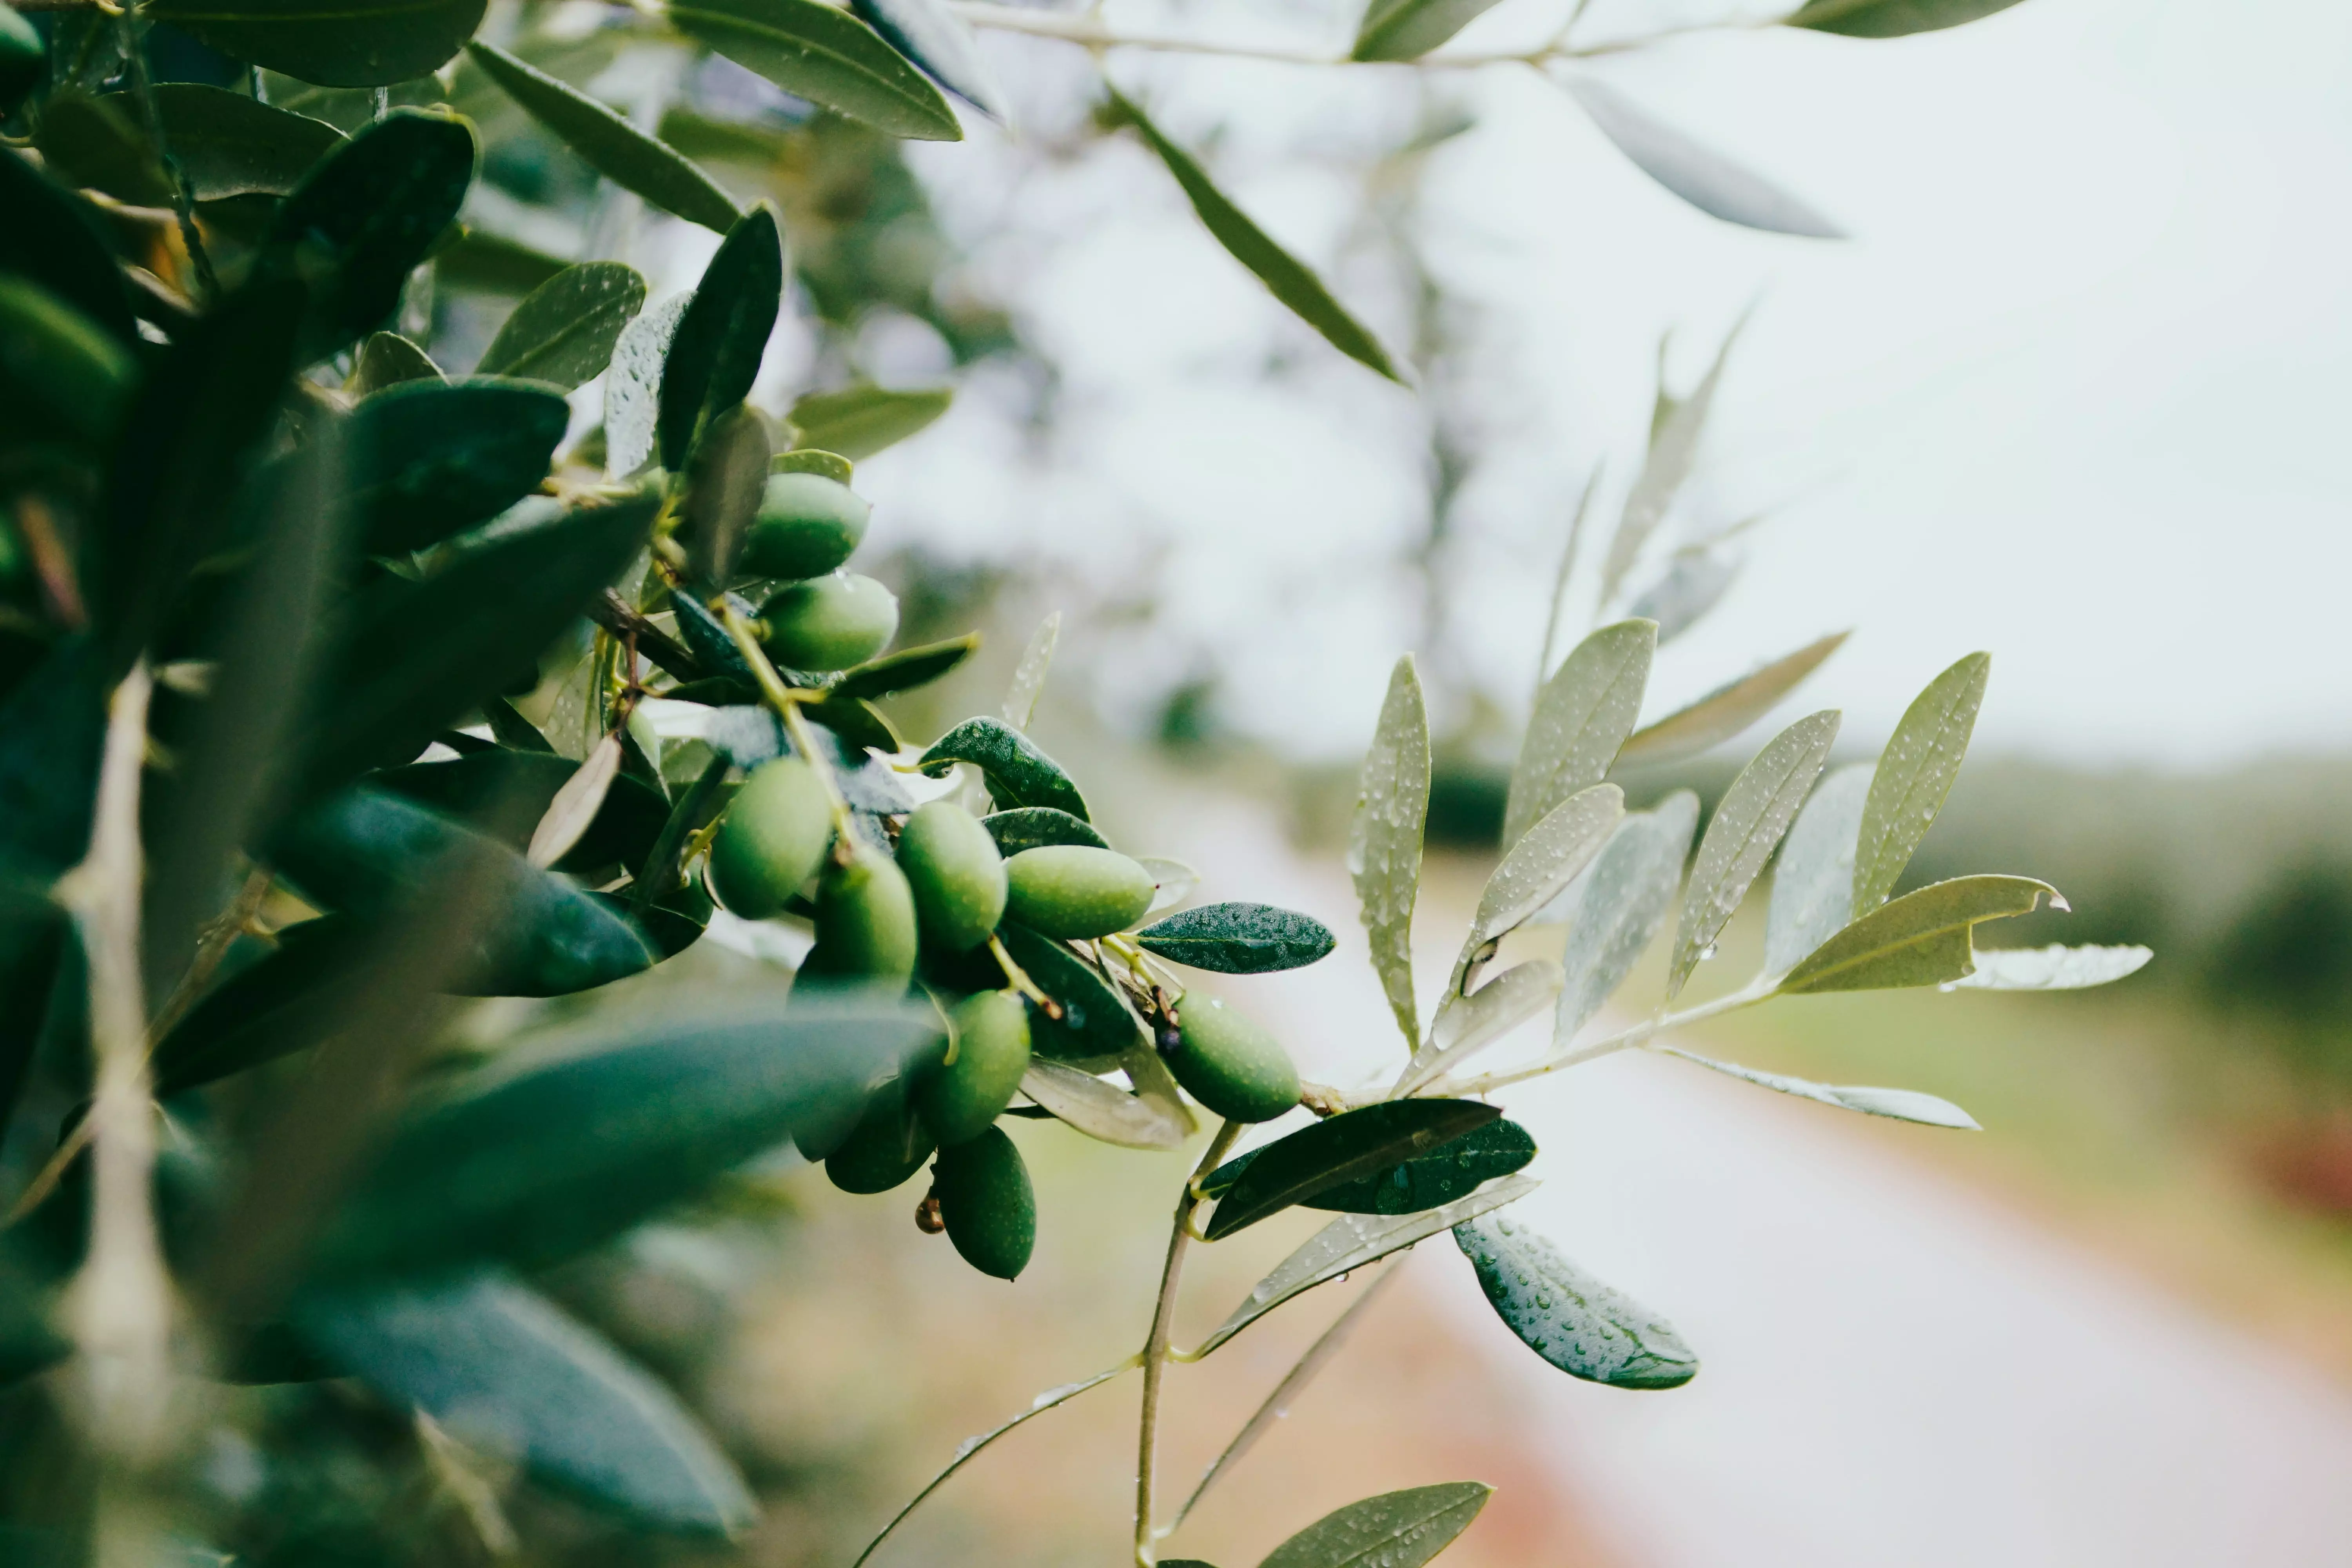 le marché de l'huile d'olive